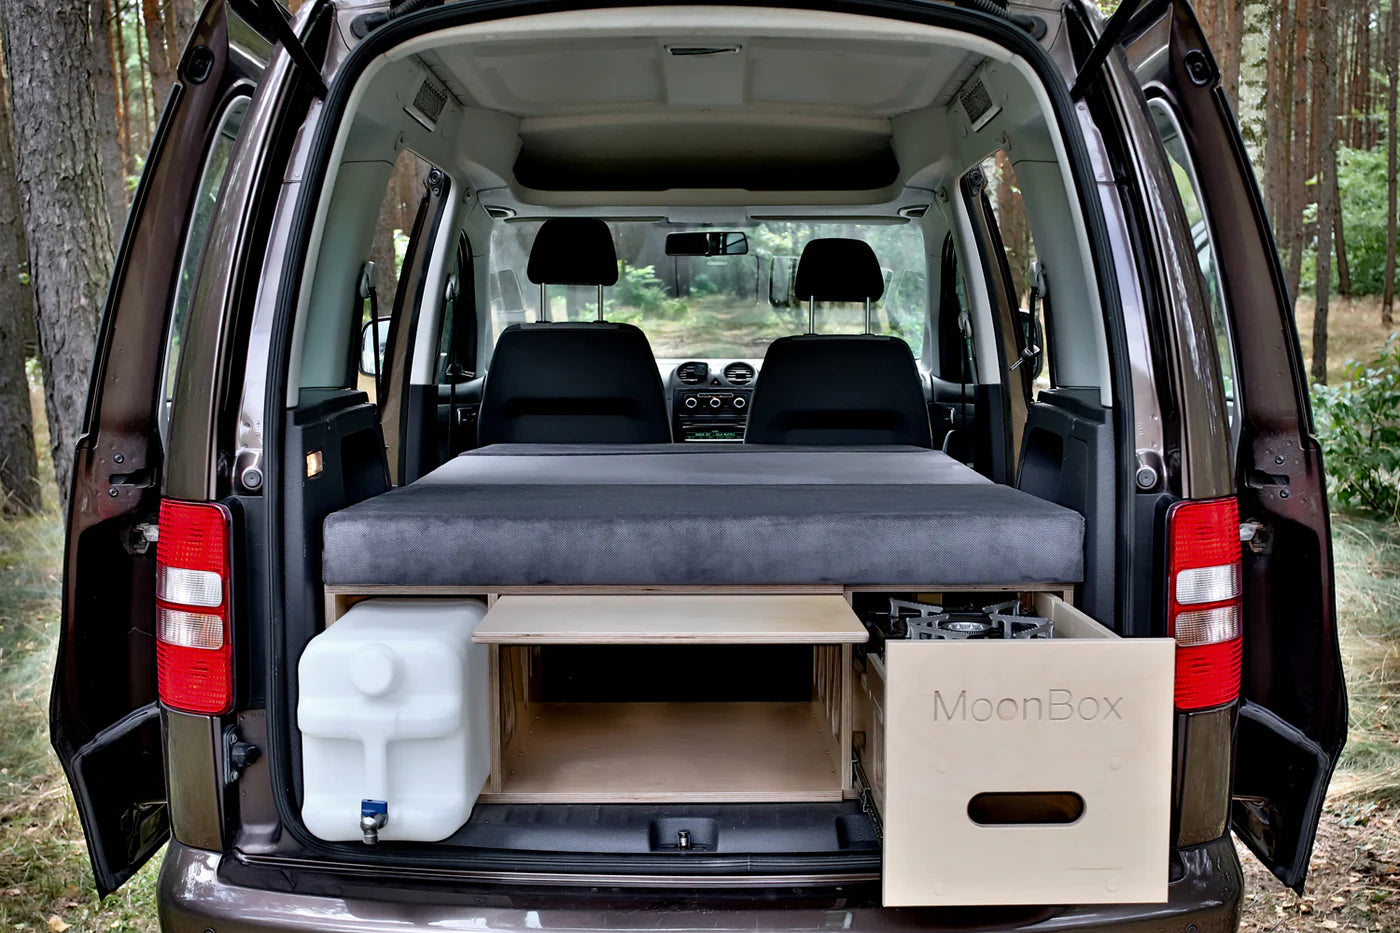 Moonbox Campingbox Minivan 111cm